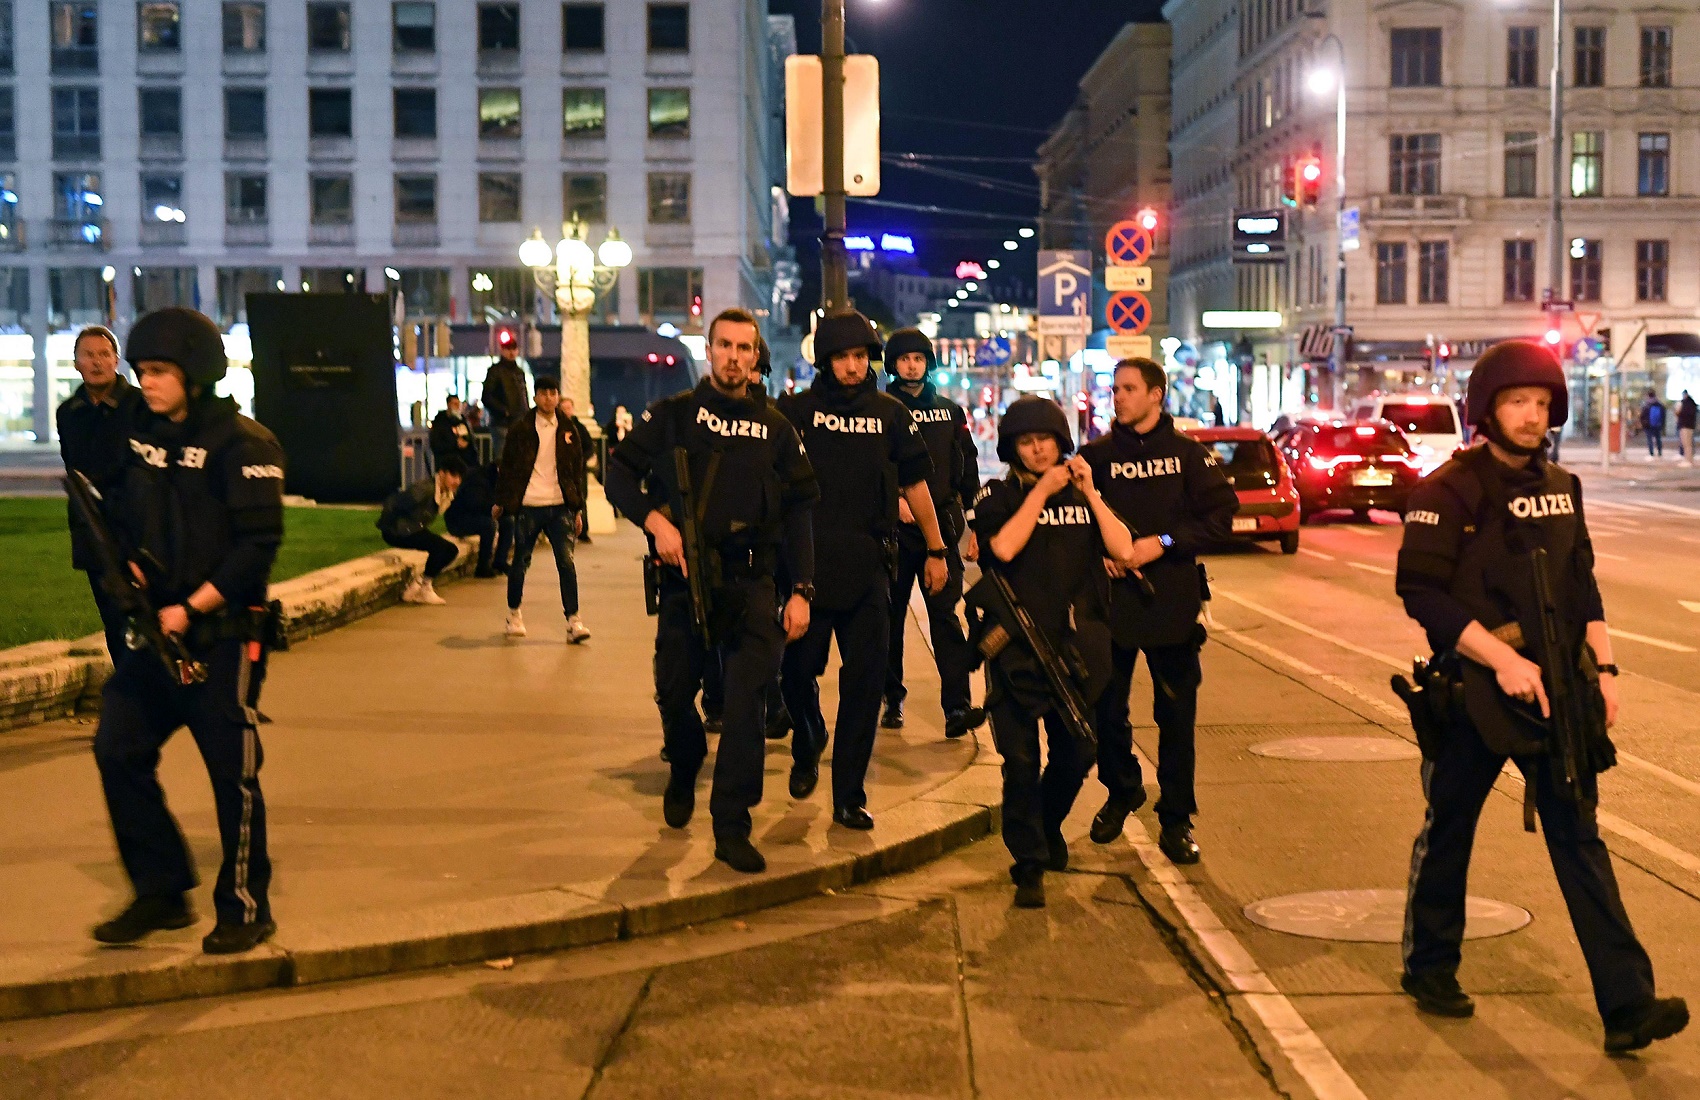 Теракт в Вене: появилось видео предположительного задержания четверых злоумышленников